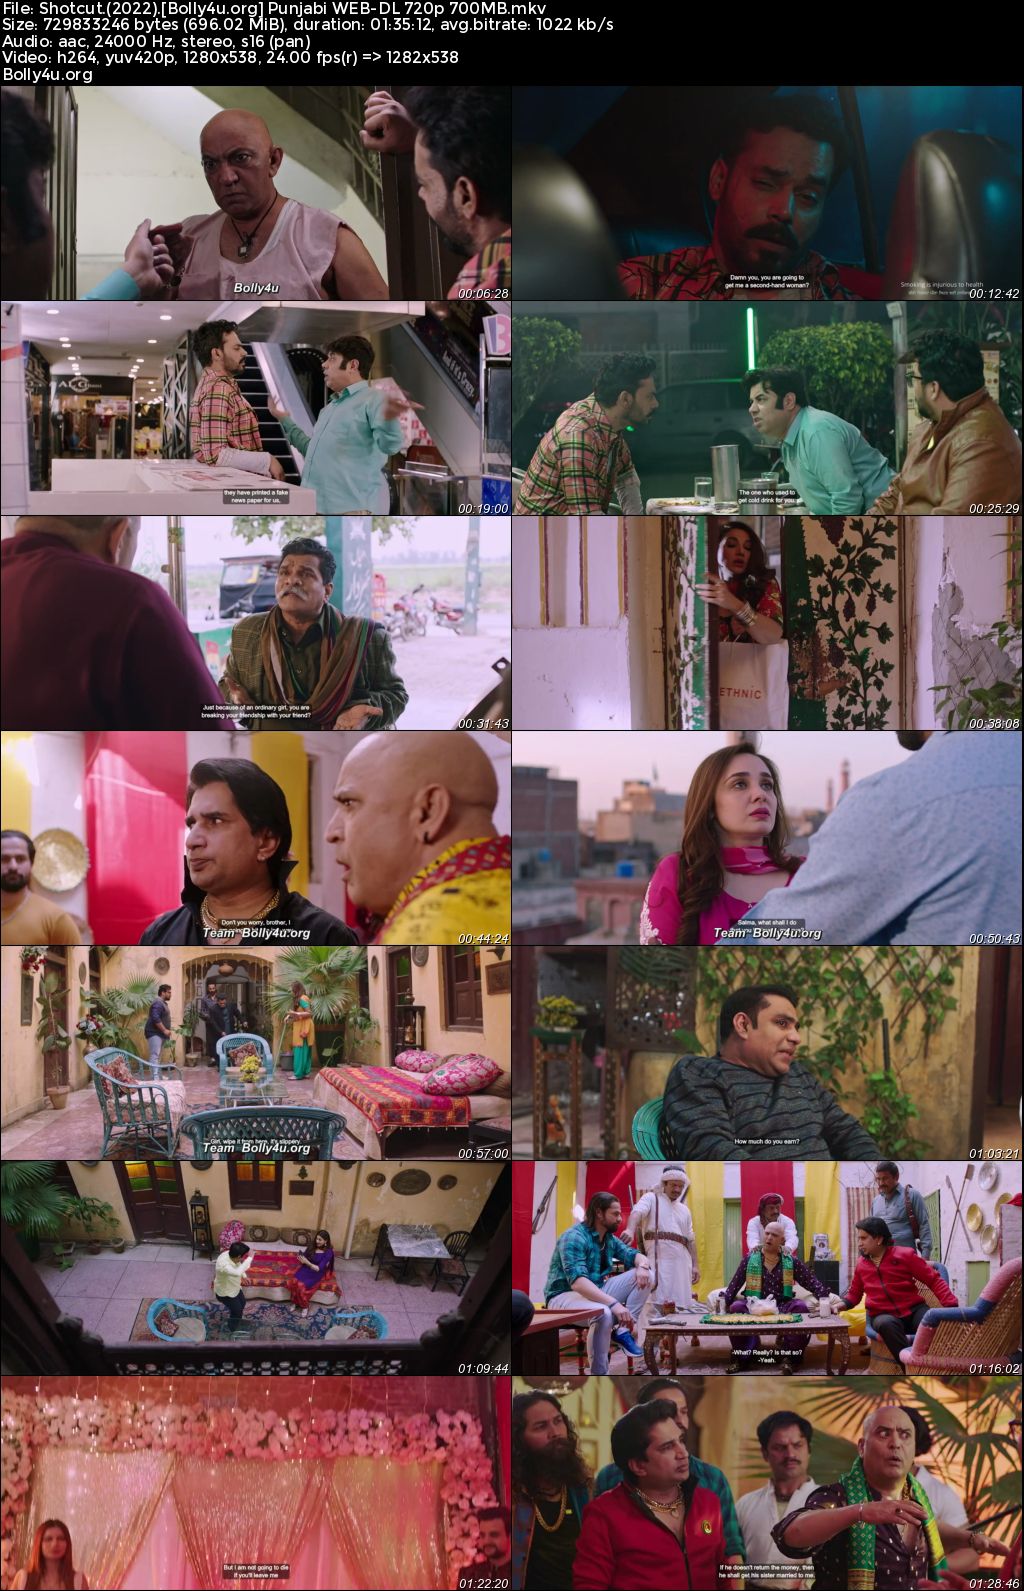 Shotcut 2022 WEB-DL Punjabi Full Movie Download 1080p 720p 480p